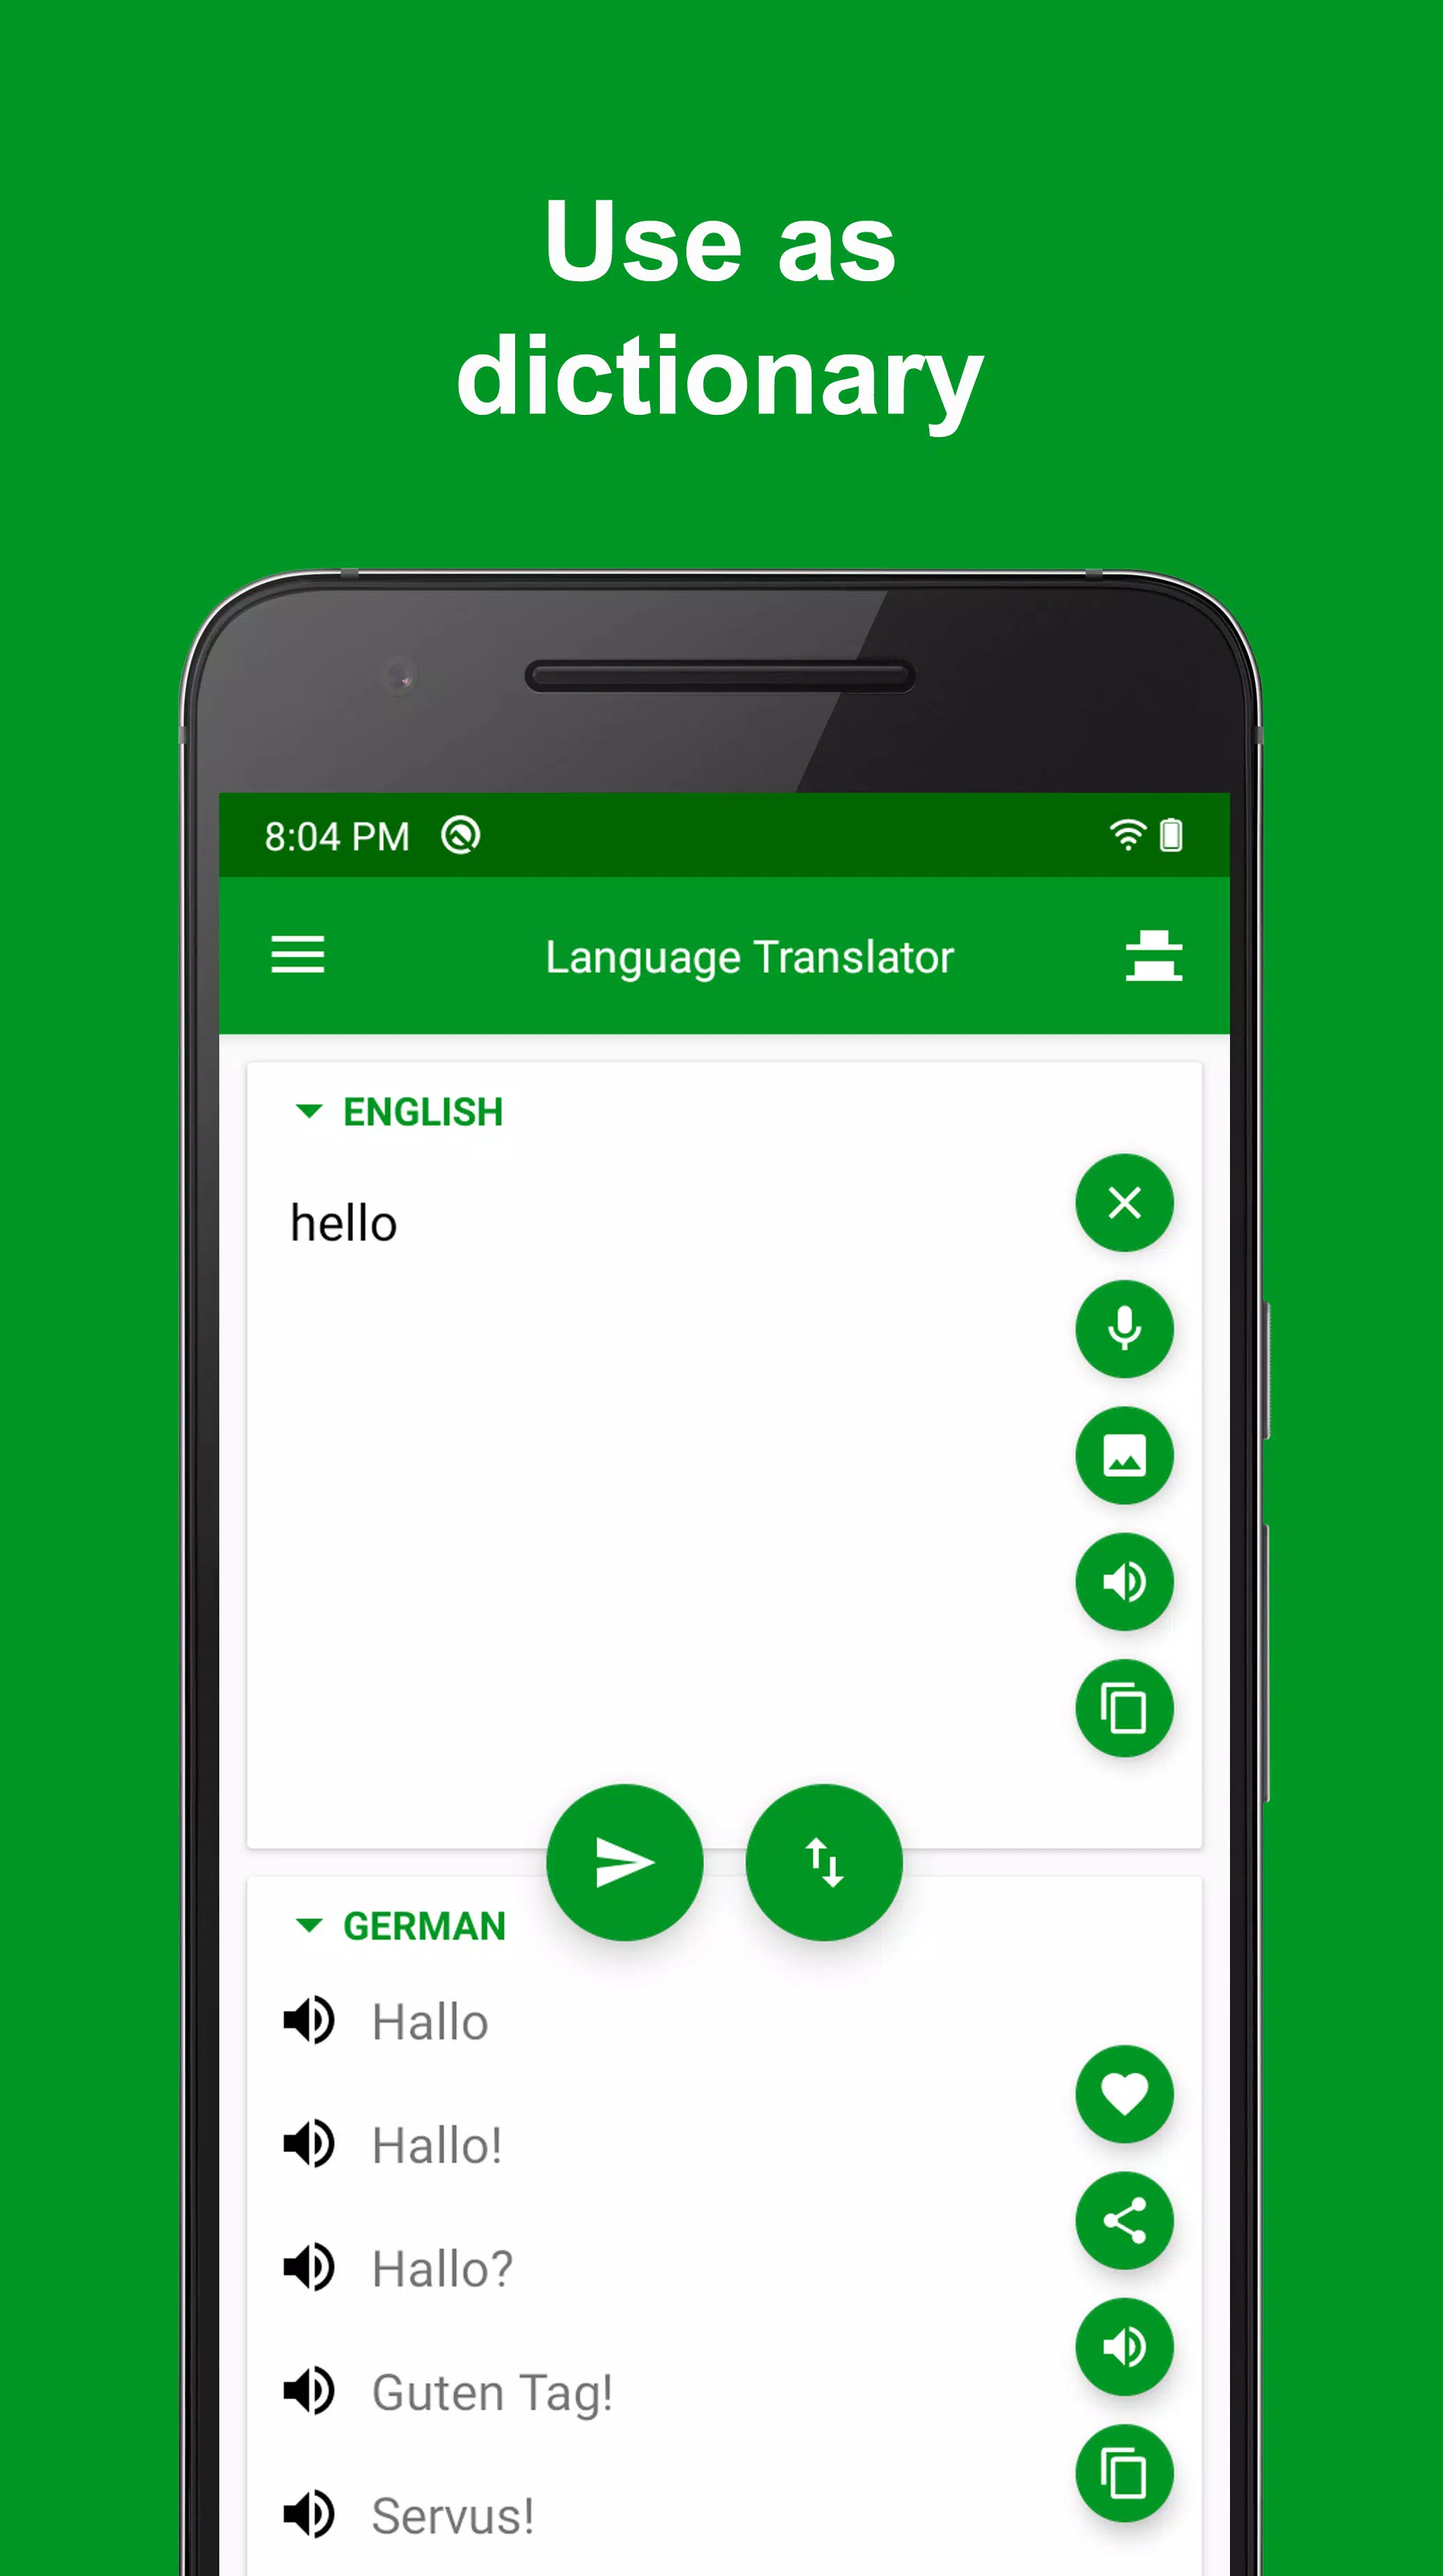 Download do APK de Falar e Traduzir Idiomas para Android